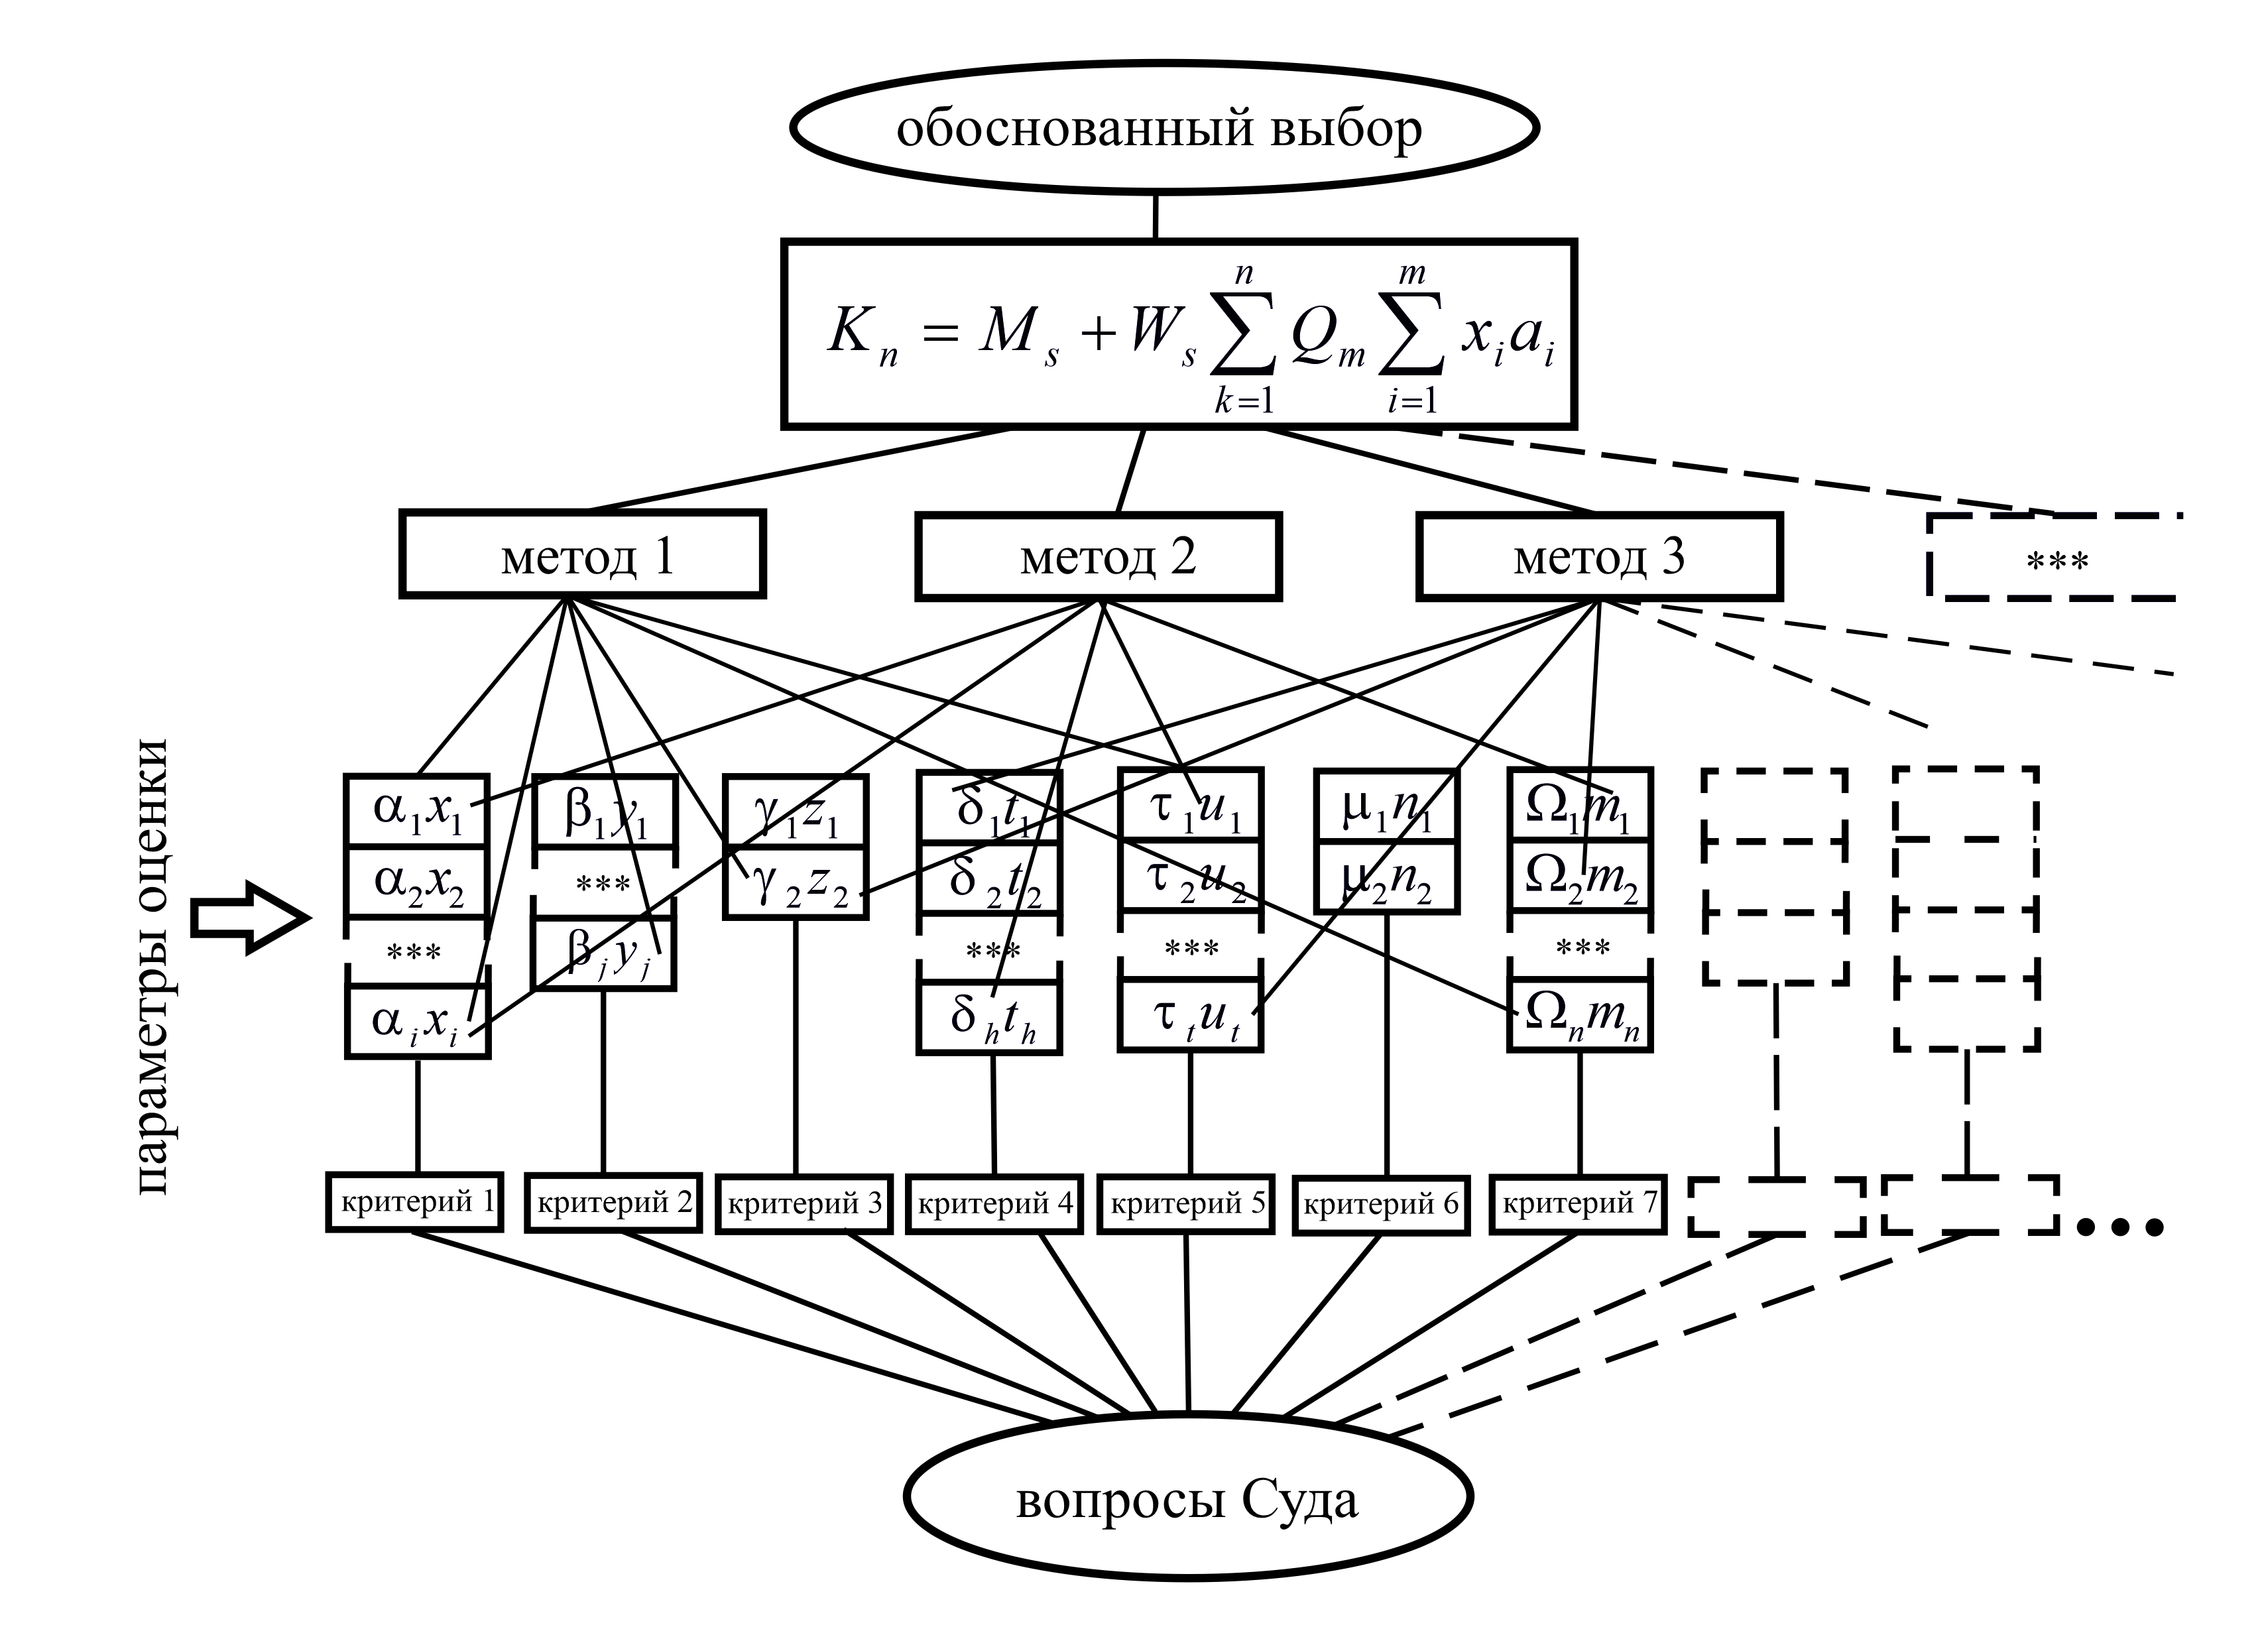 Схематическое изображение «пирамиды» критериев выбора оптимальной методики экспертного исследования в судебном заседании: Qm – максимальное значение суммы параметров оценки качества X, Y, Z… с учетом их значимости («веса») ɑ, β, γ…